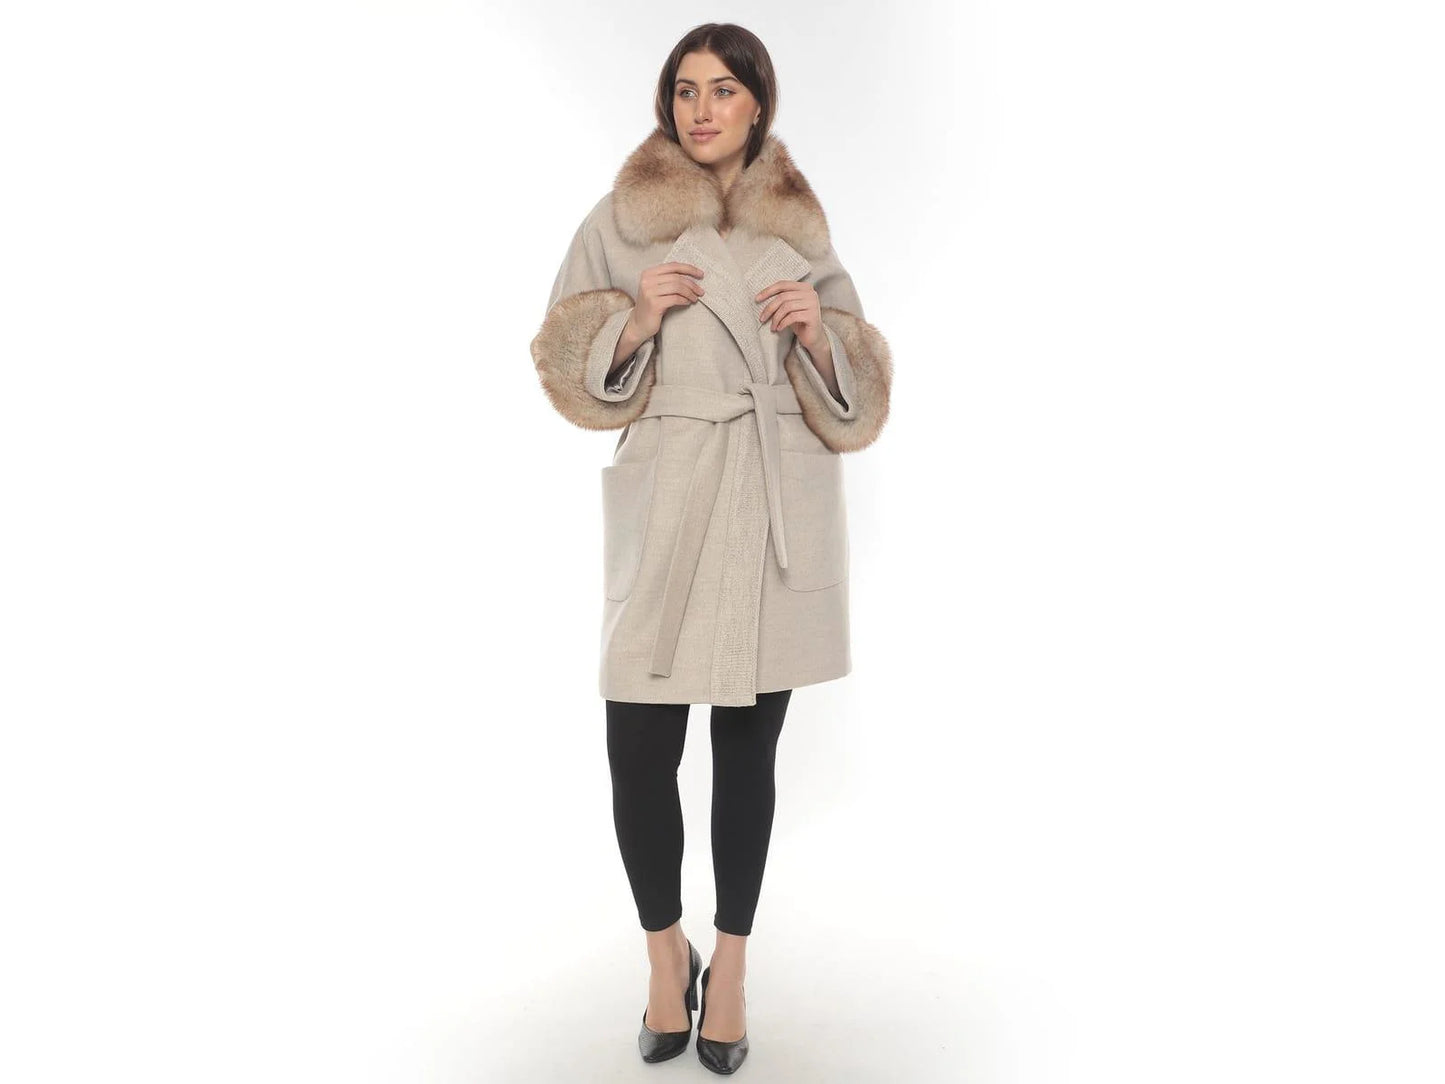 Elegant Beige Lama Coat with Fox Fur Accents